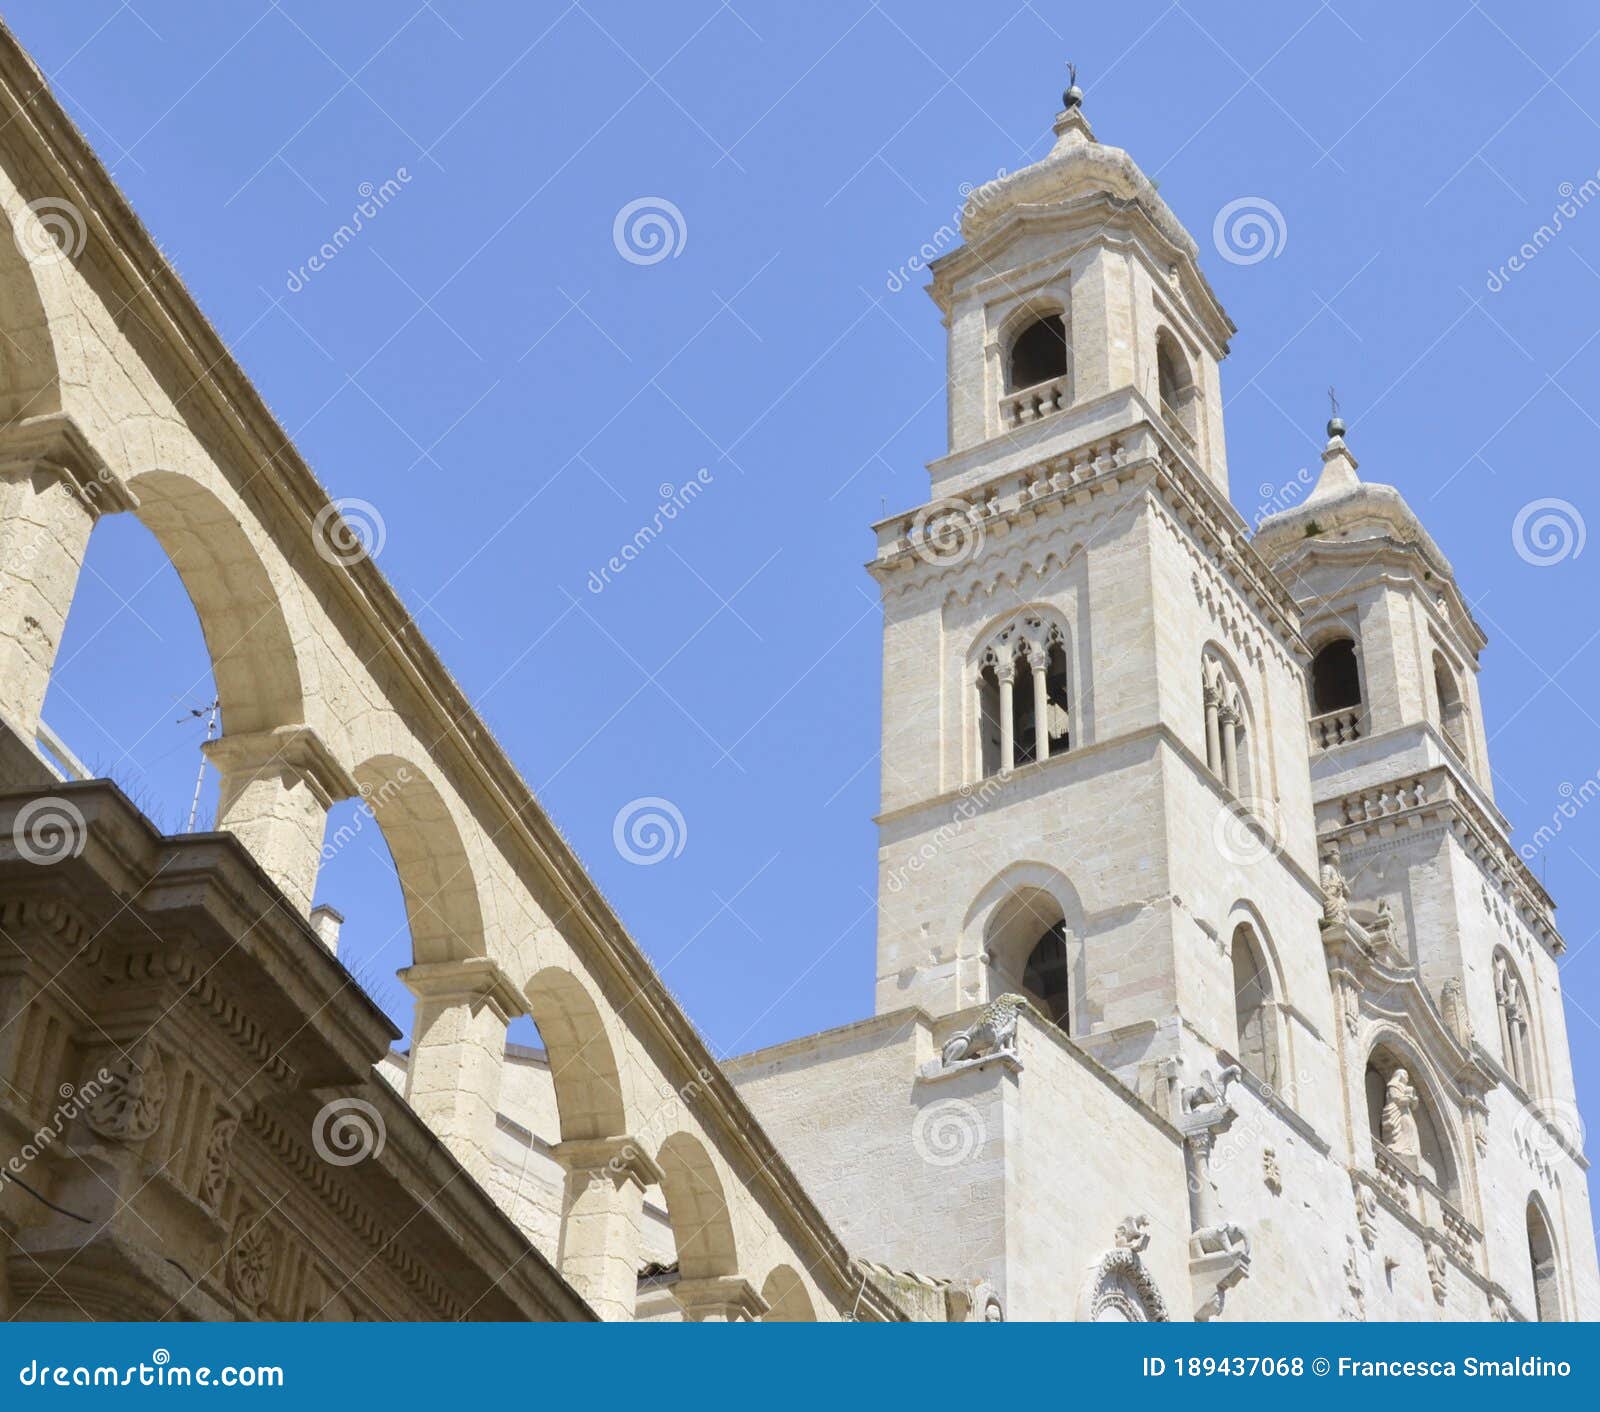 altamura, the cathedral of santa maria assunta